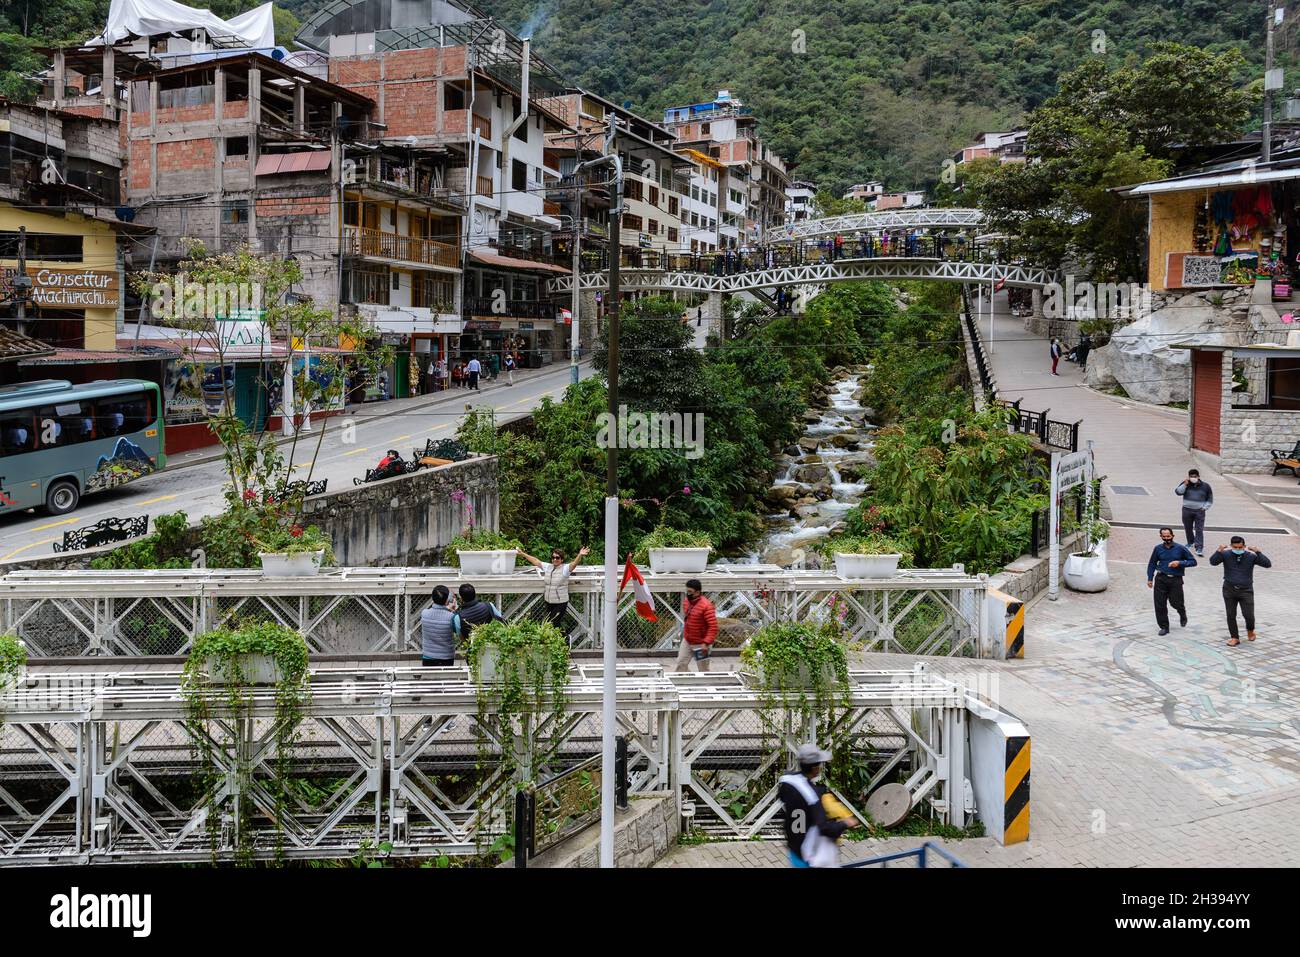 Belebte Straße der kleinen Stadt Aguas Calientes, das Tor zu Machu Picchu. Cuzco, Peru. Stockfoto